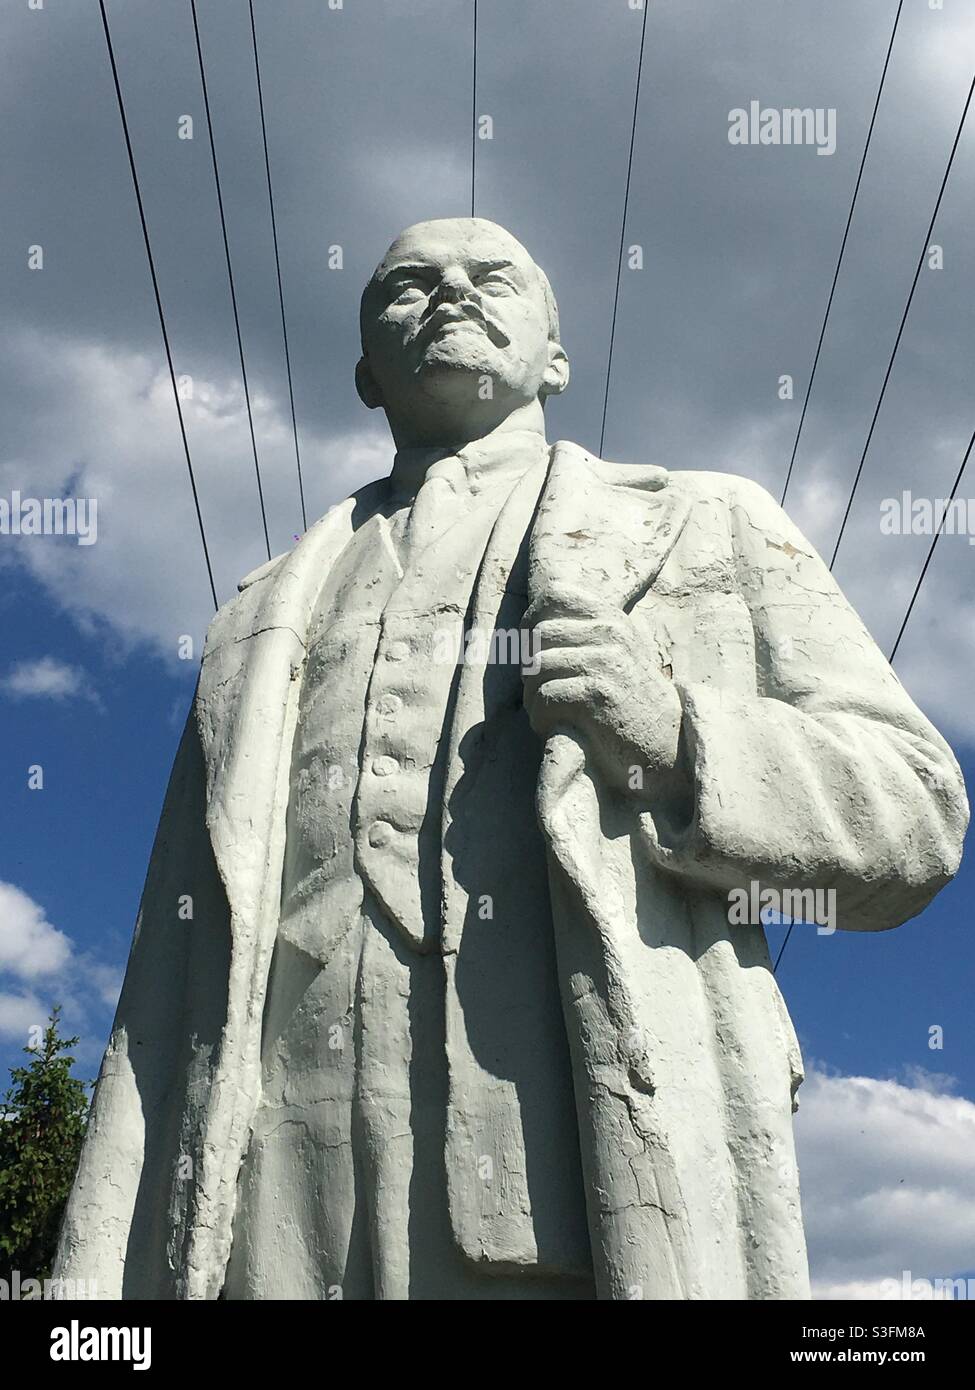 Lenin statue in Elektostal, Moscow Region, Russia. Stock Photo